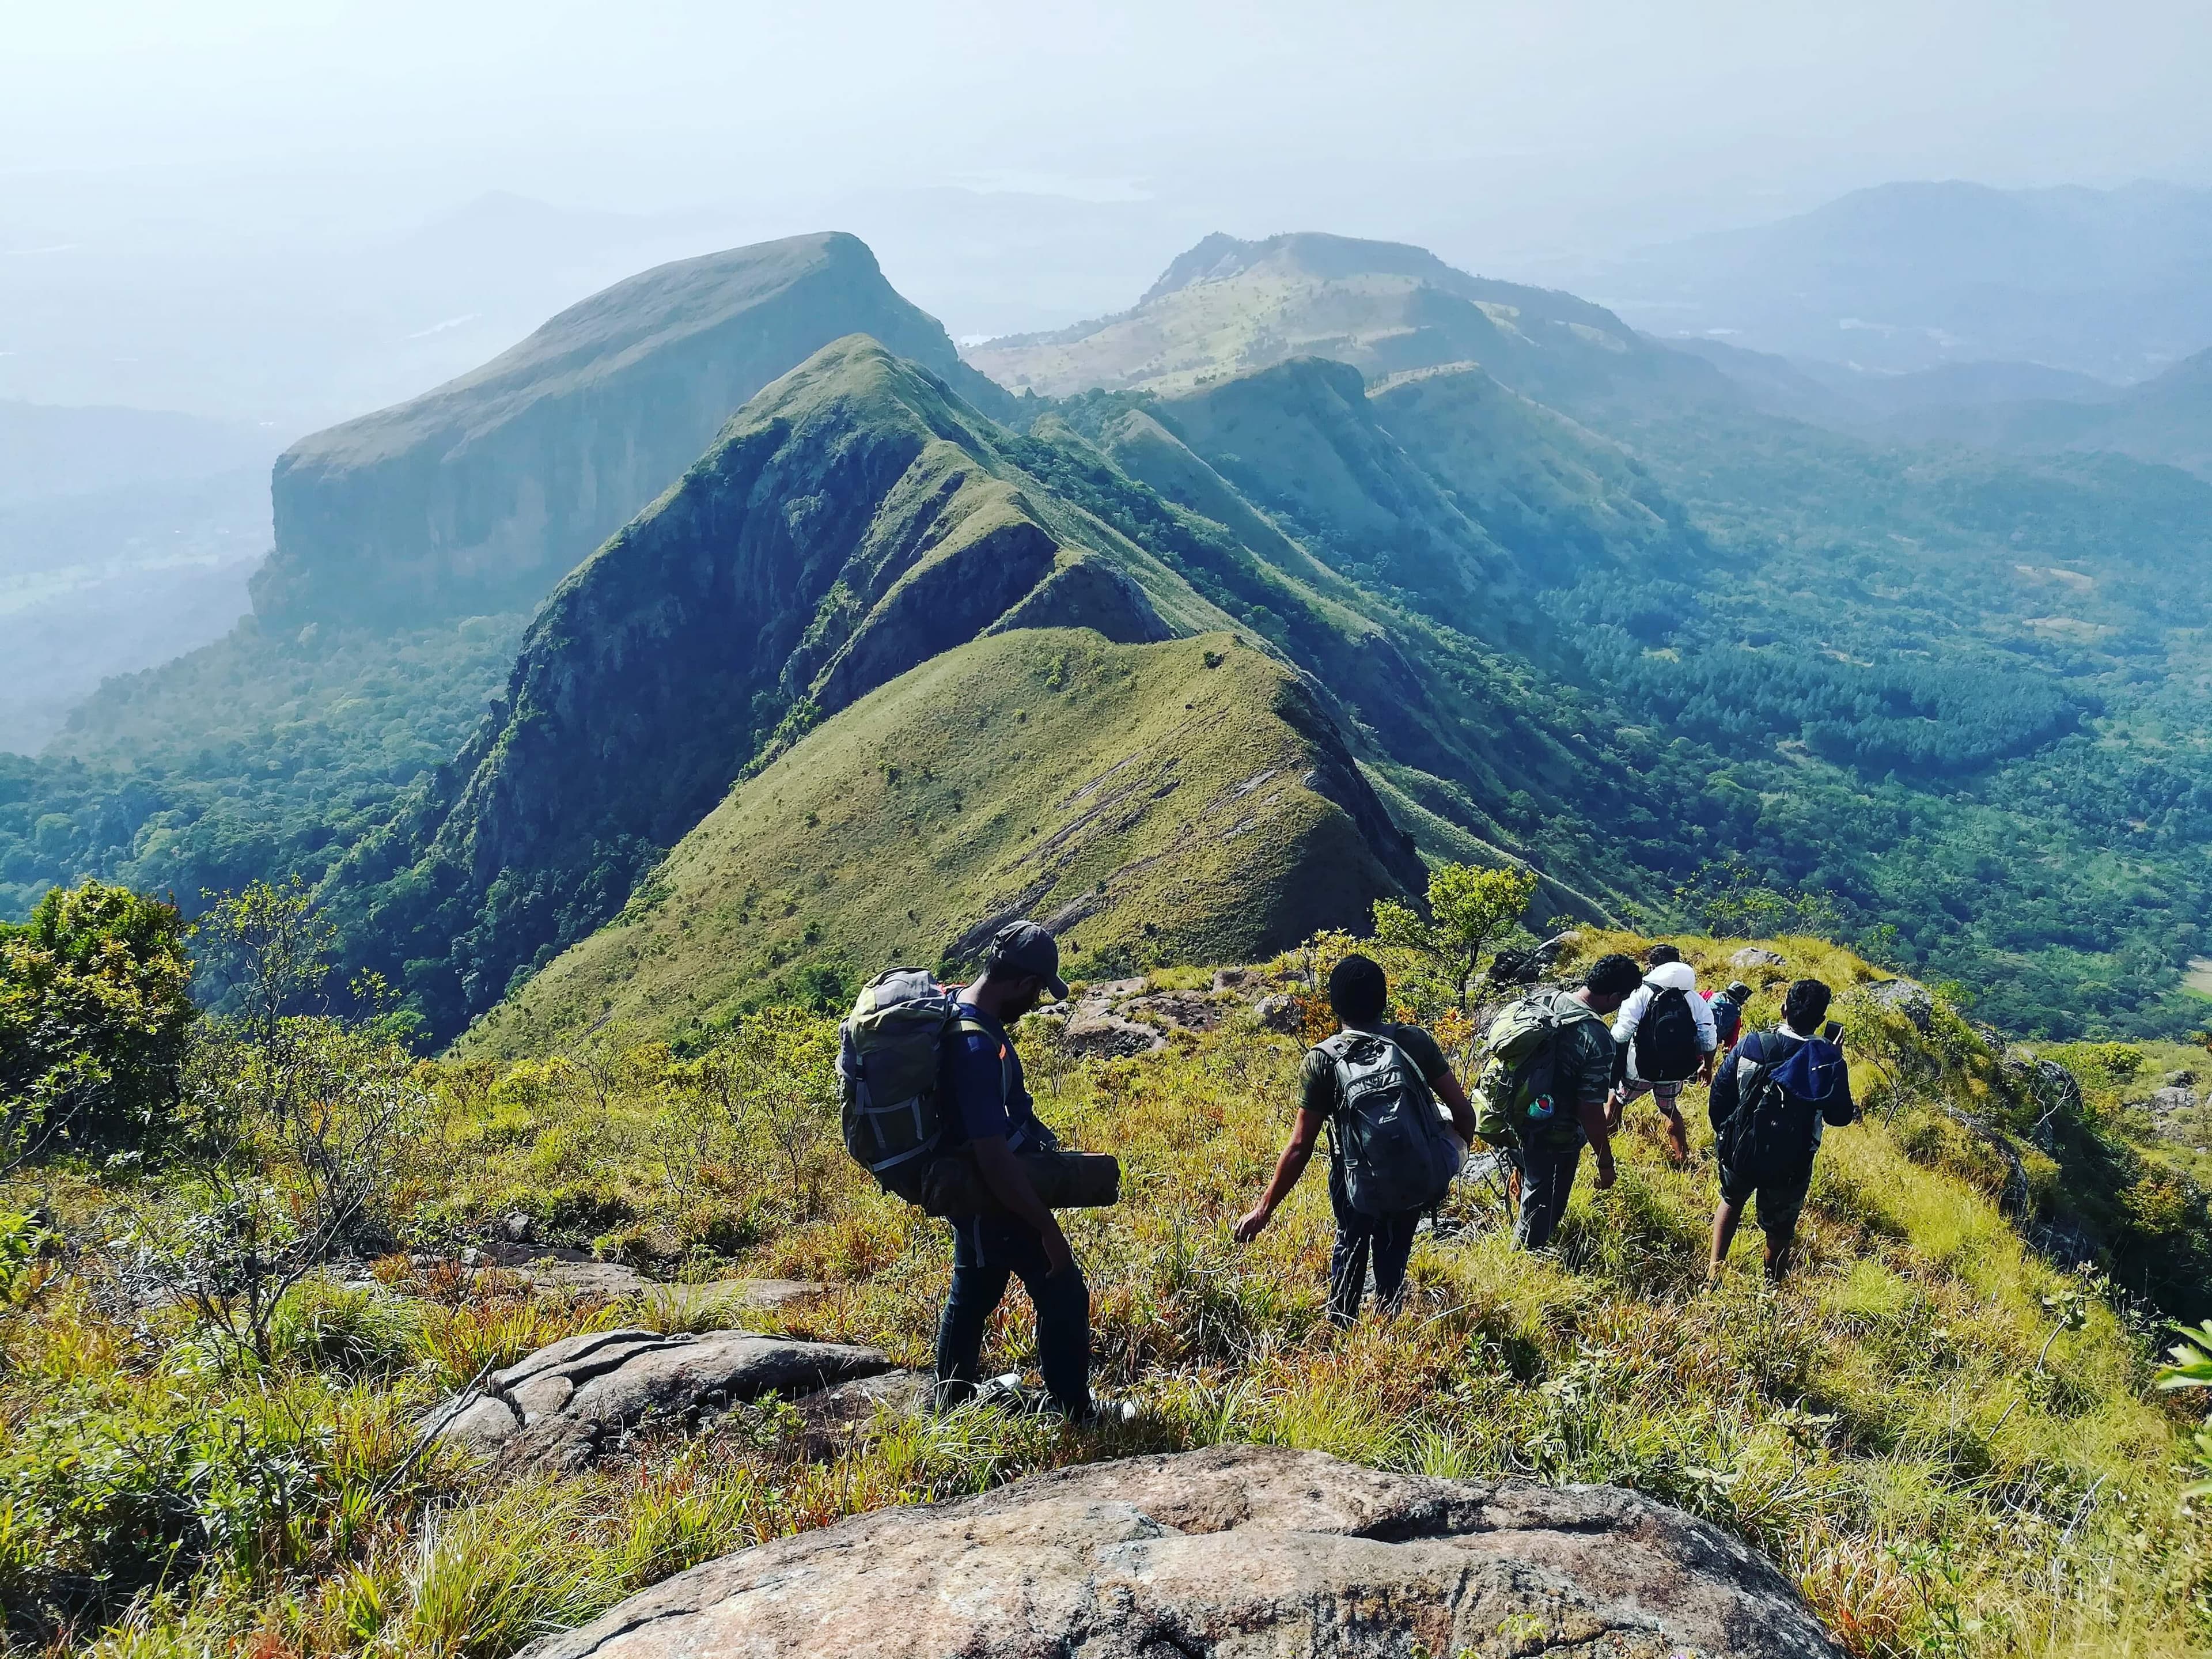 مجموعة من السائحين يتجولون في جبال ناكلز الجميلة في سريلانكا